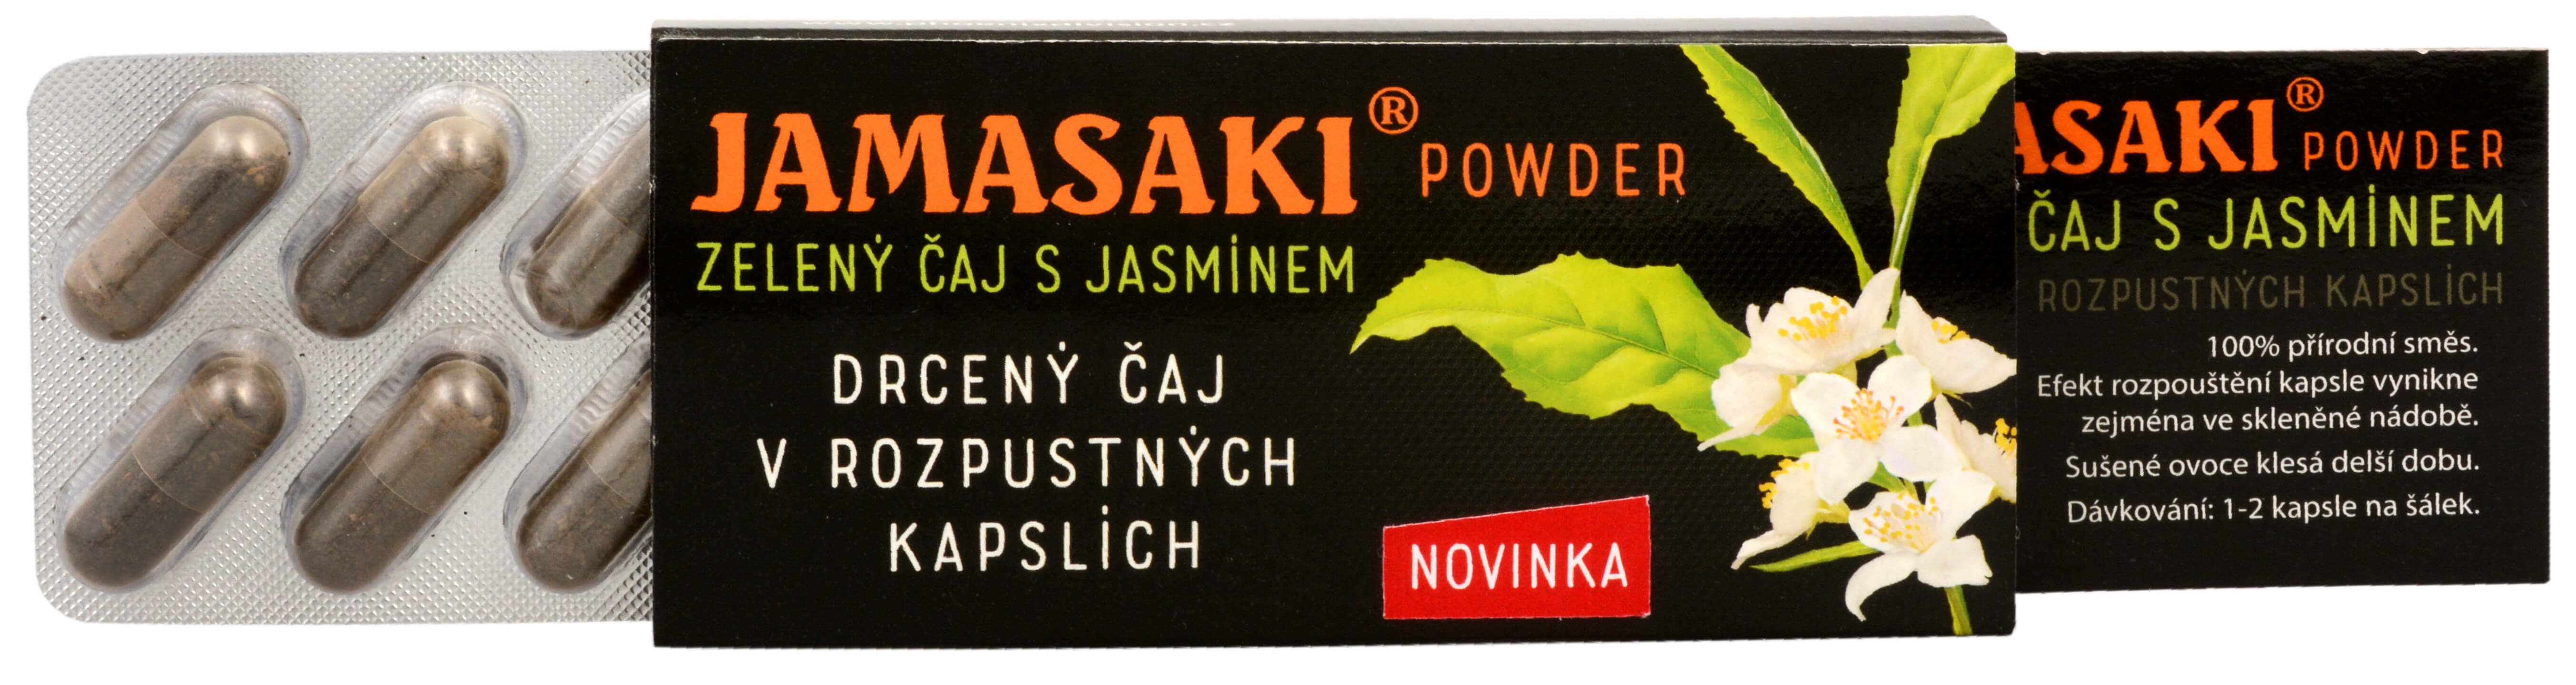 Zobrazit detail výrobku Hannasaki Jamasaki powder - zelený jasmínový a červený čaj - cestovní balení 10 x 1 g